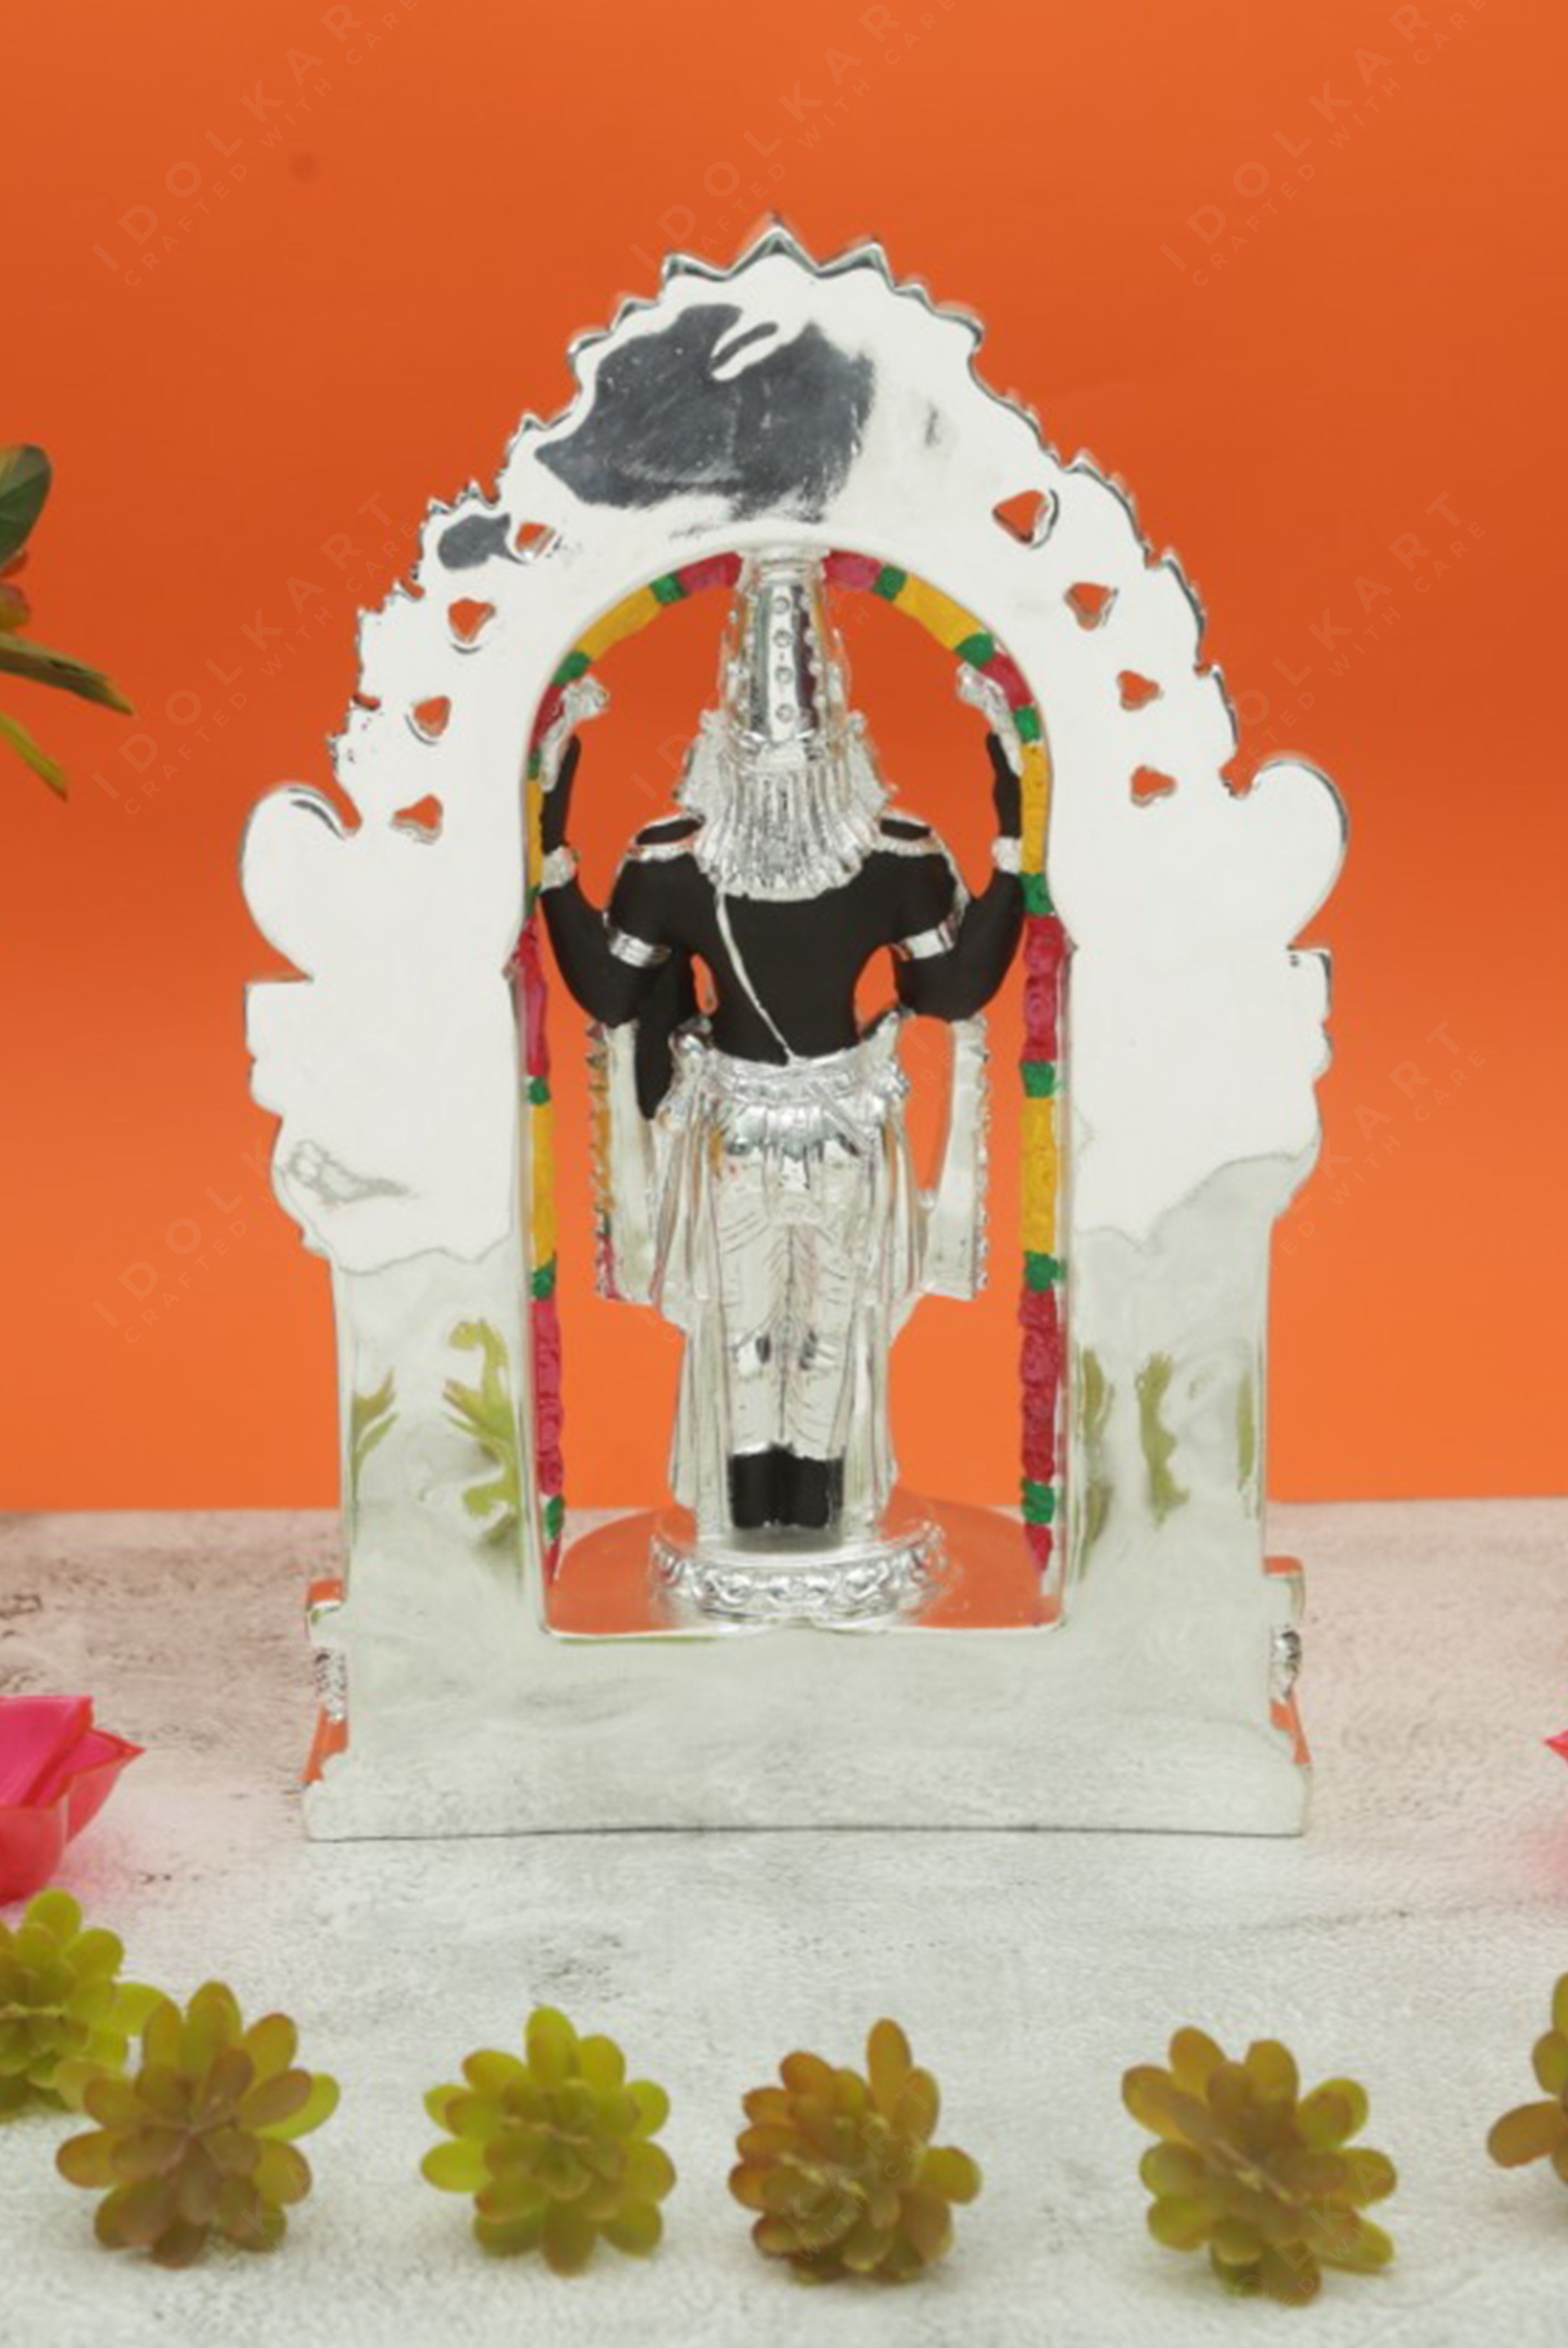 999 Silver Coated Tirupati Balaji Statue